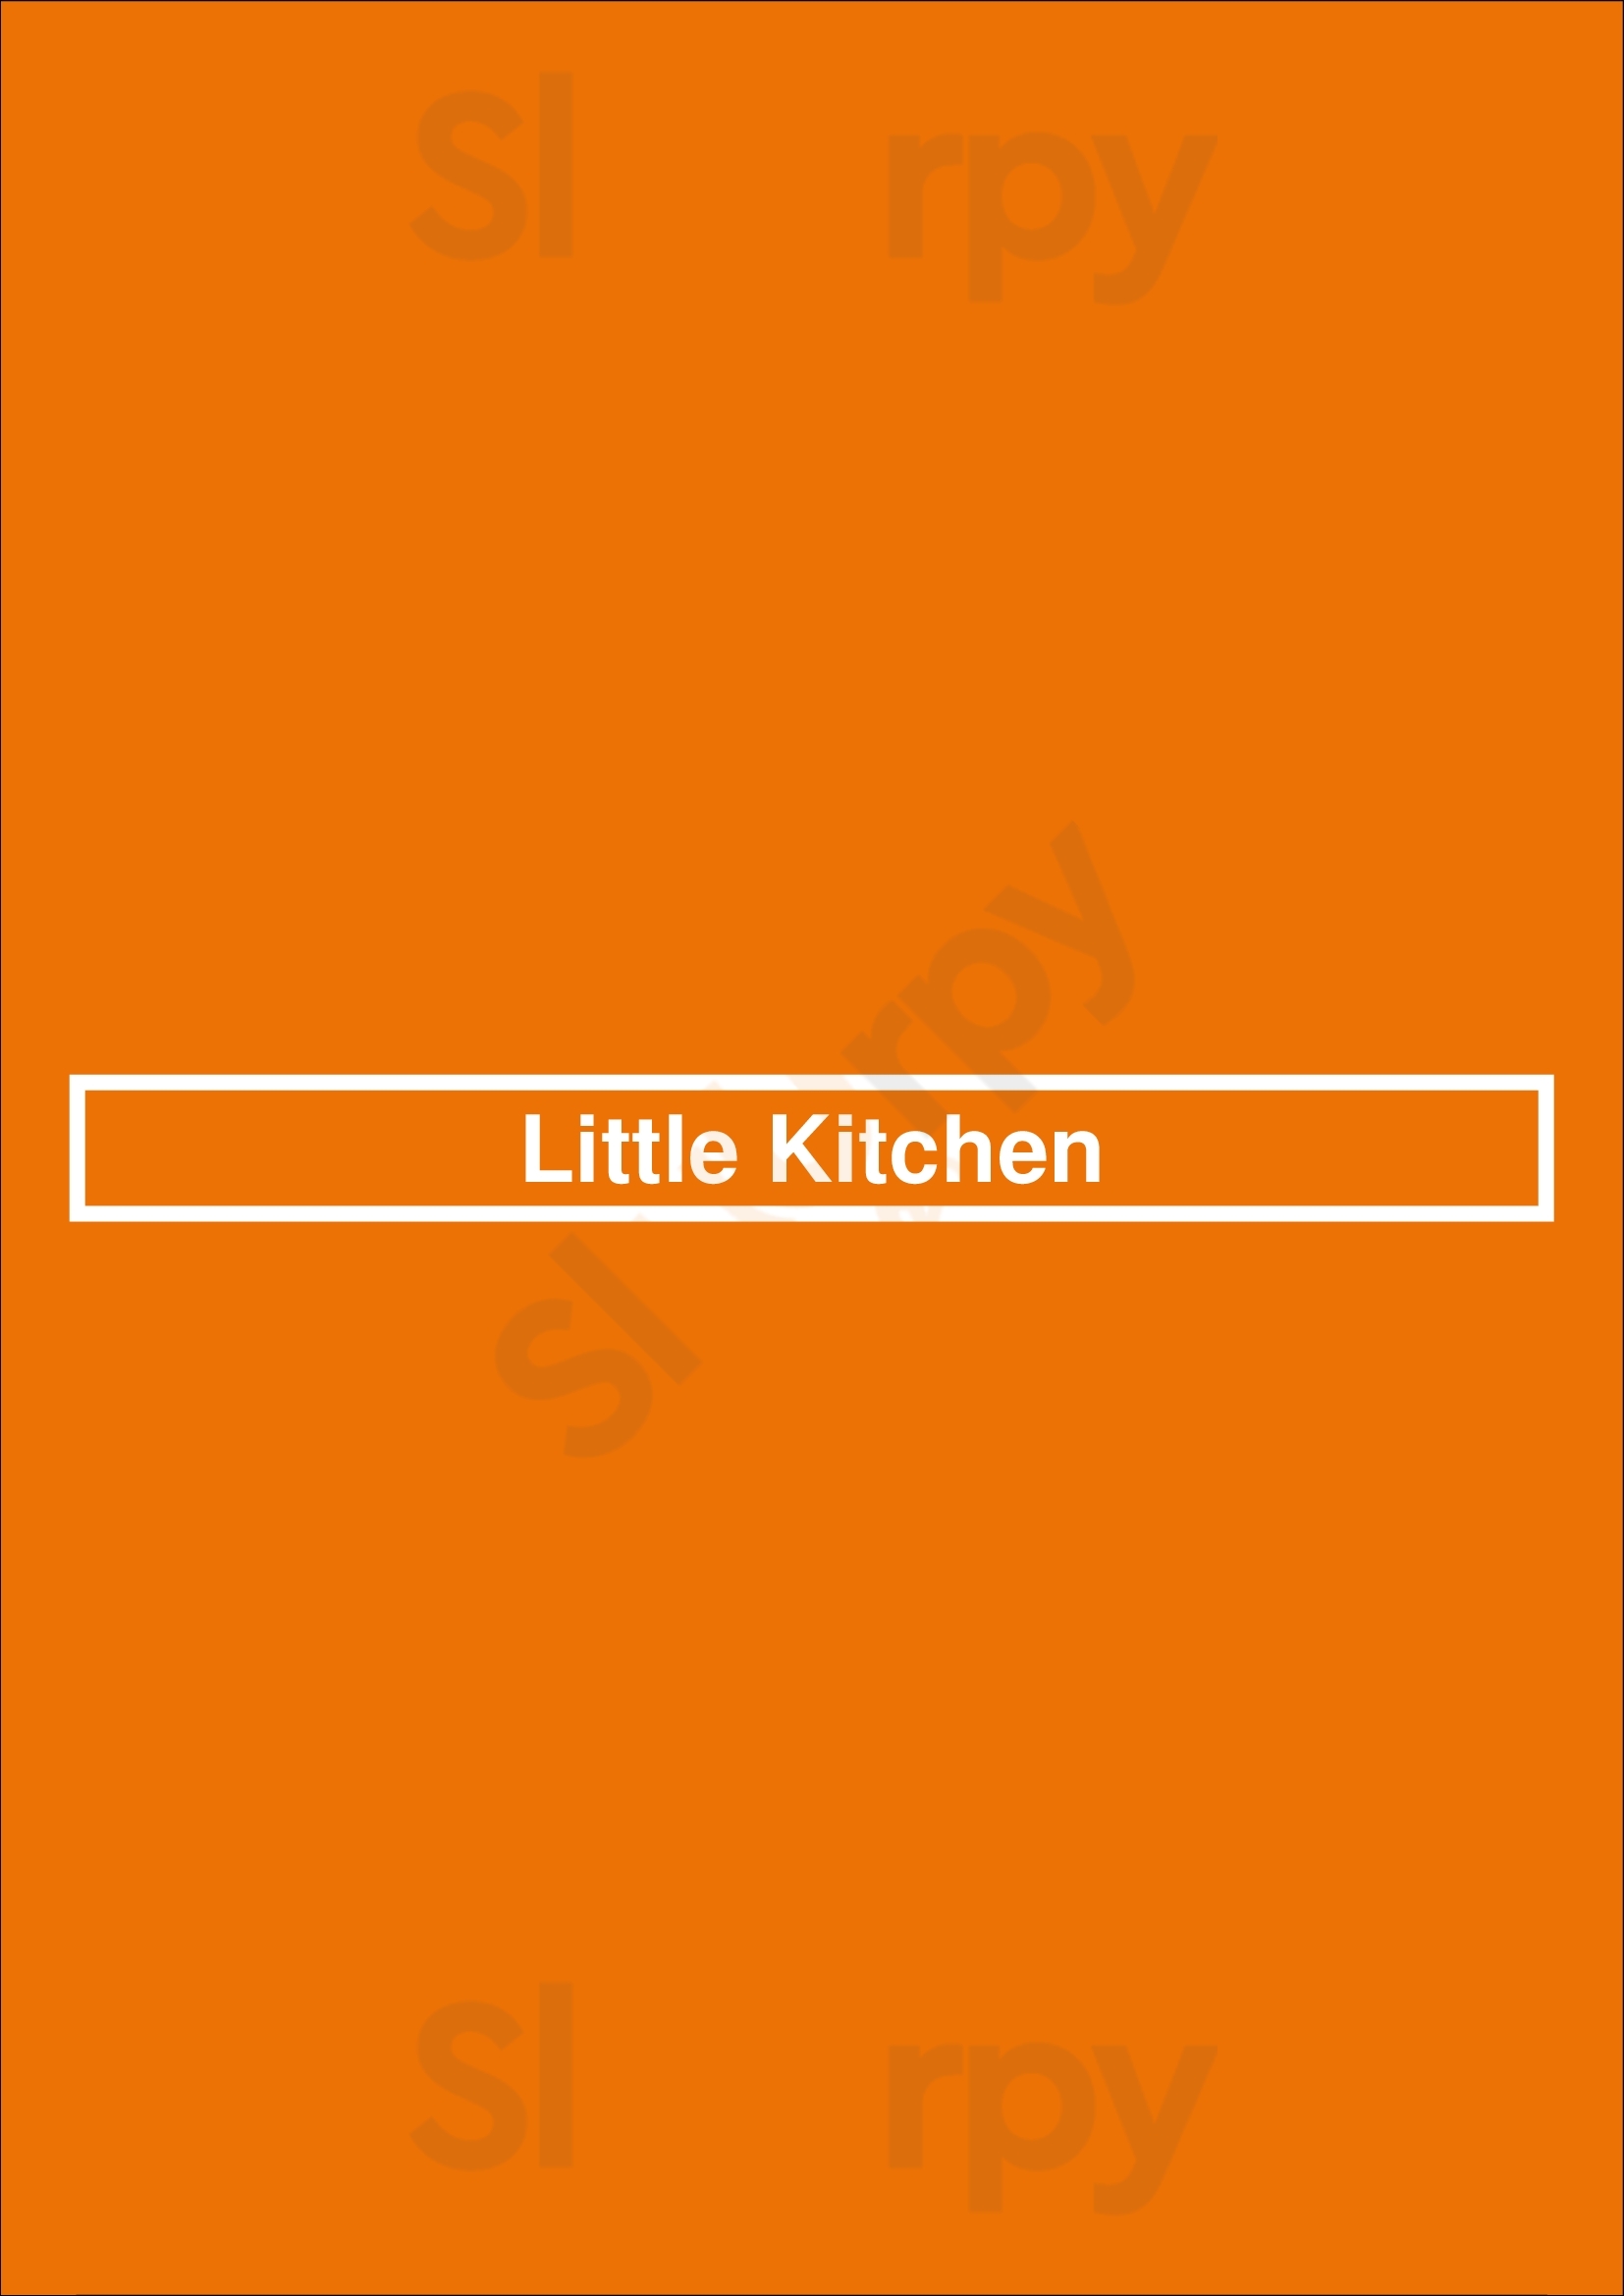 Little Kitchen Kingston Menu - 1